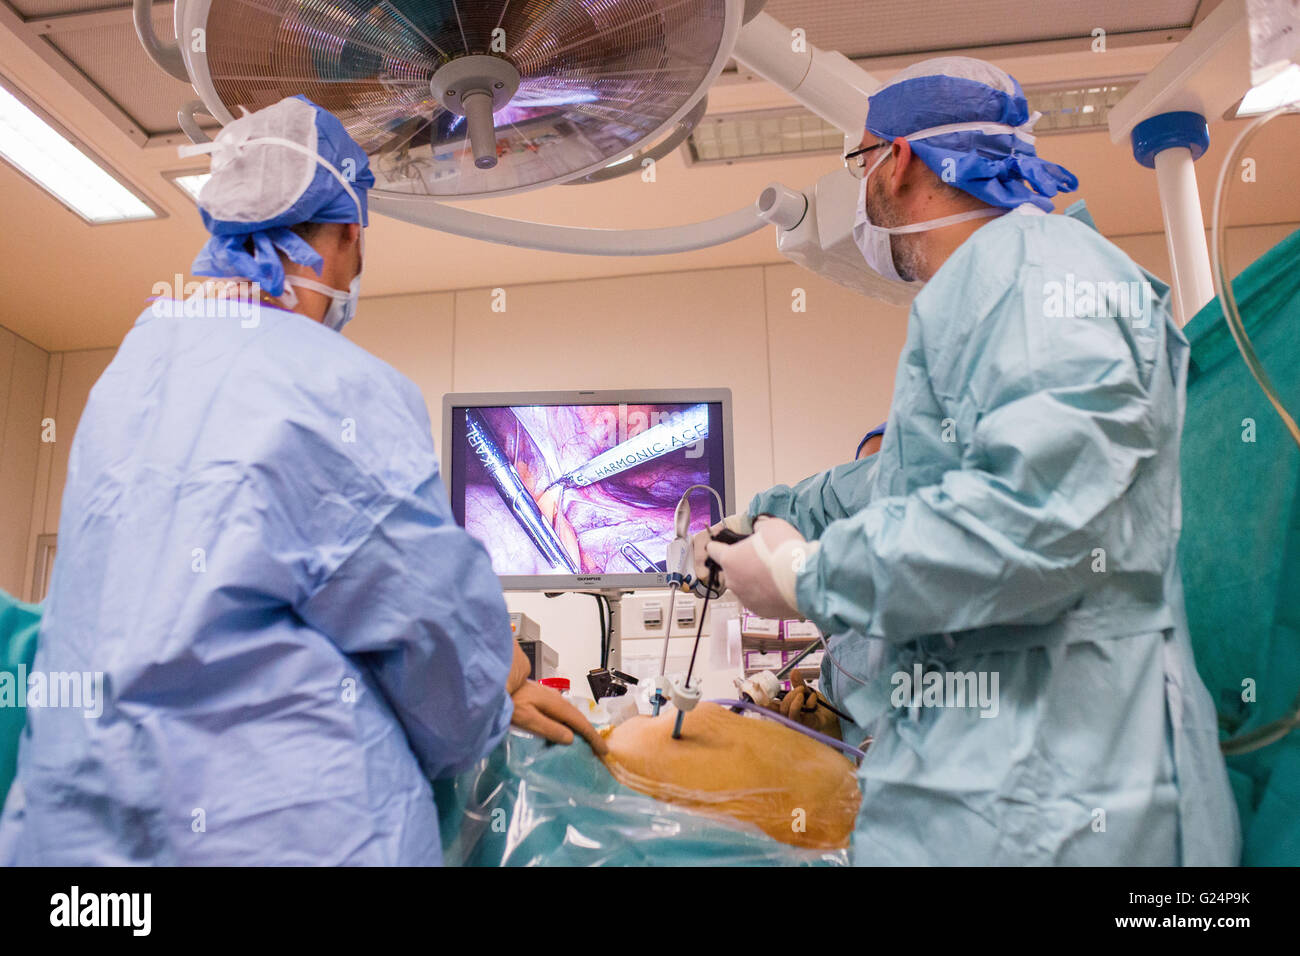 La laparoscopia y la histeroscopia exploración quirúrgica, el tratamiento de la endometriosis, hospital de Limoges, Francia. Foto de stock